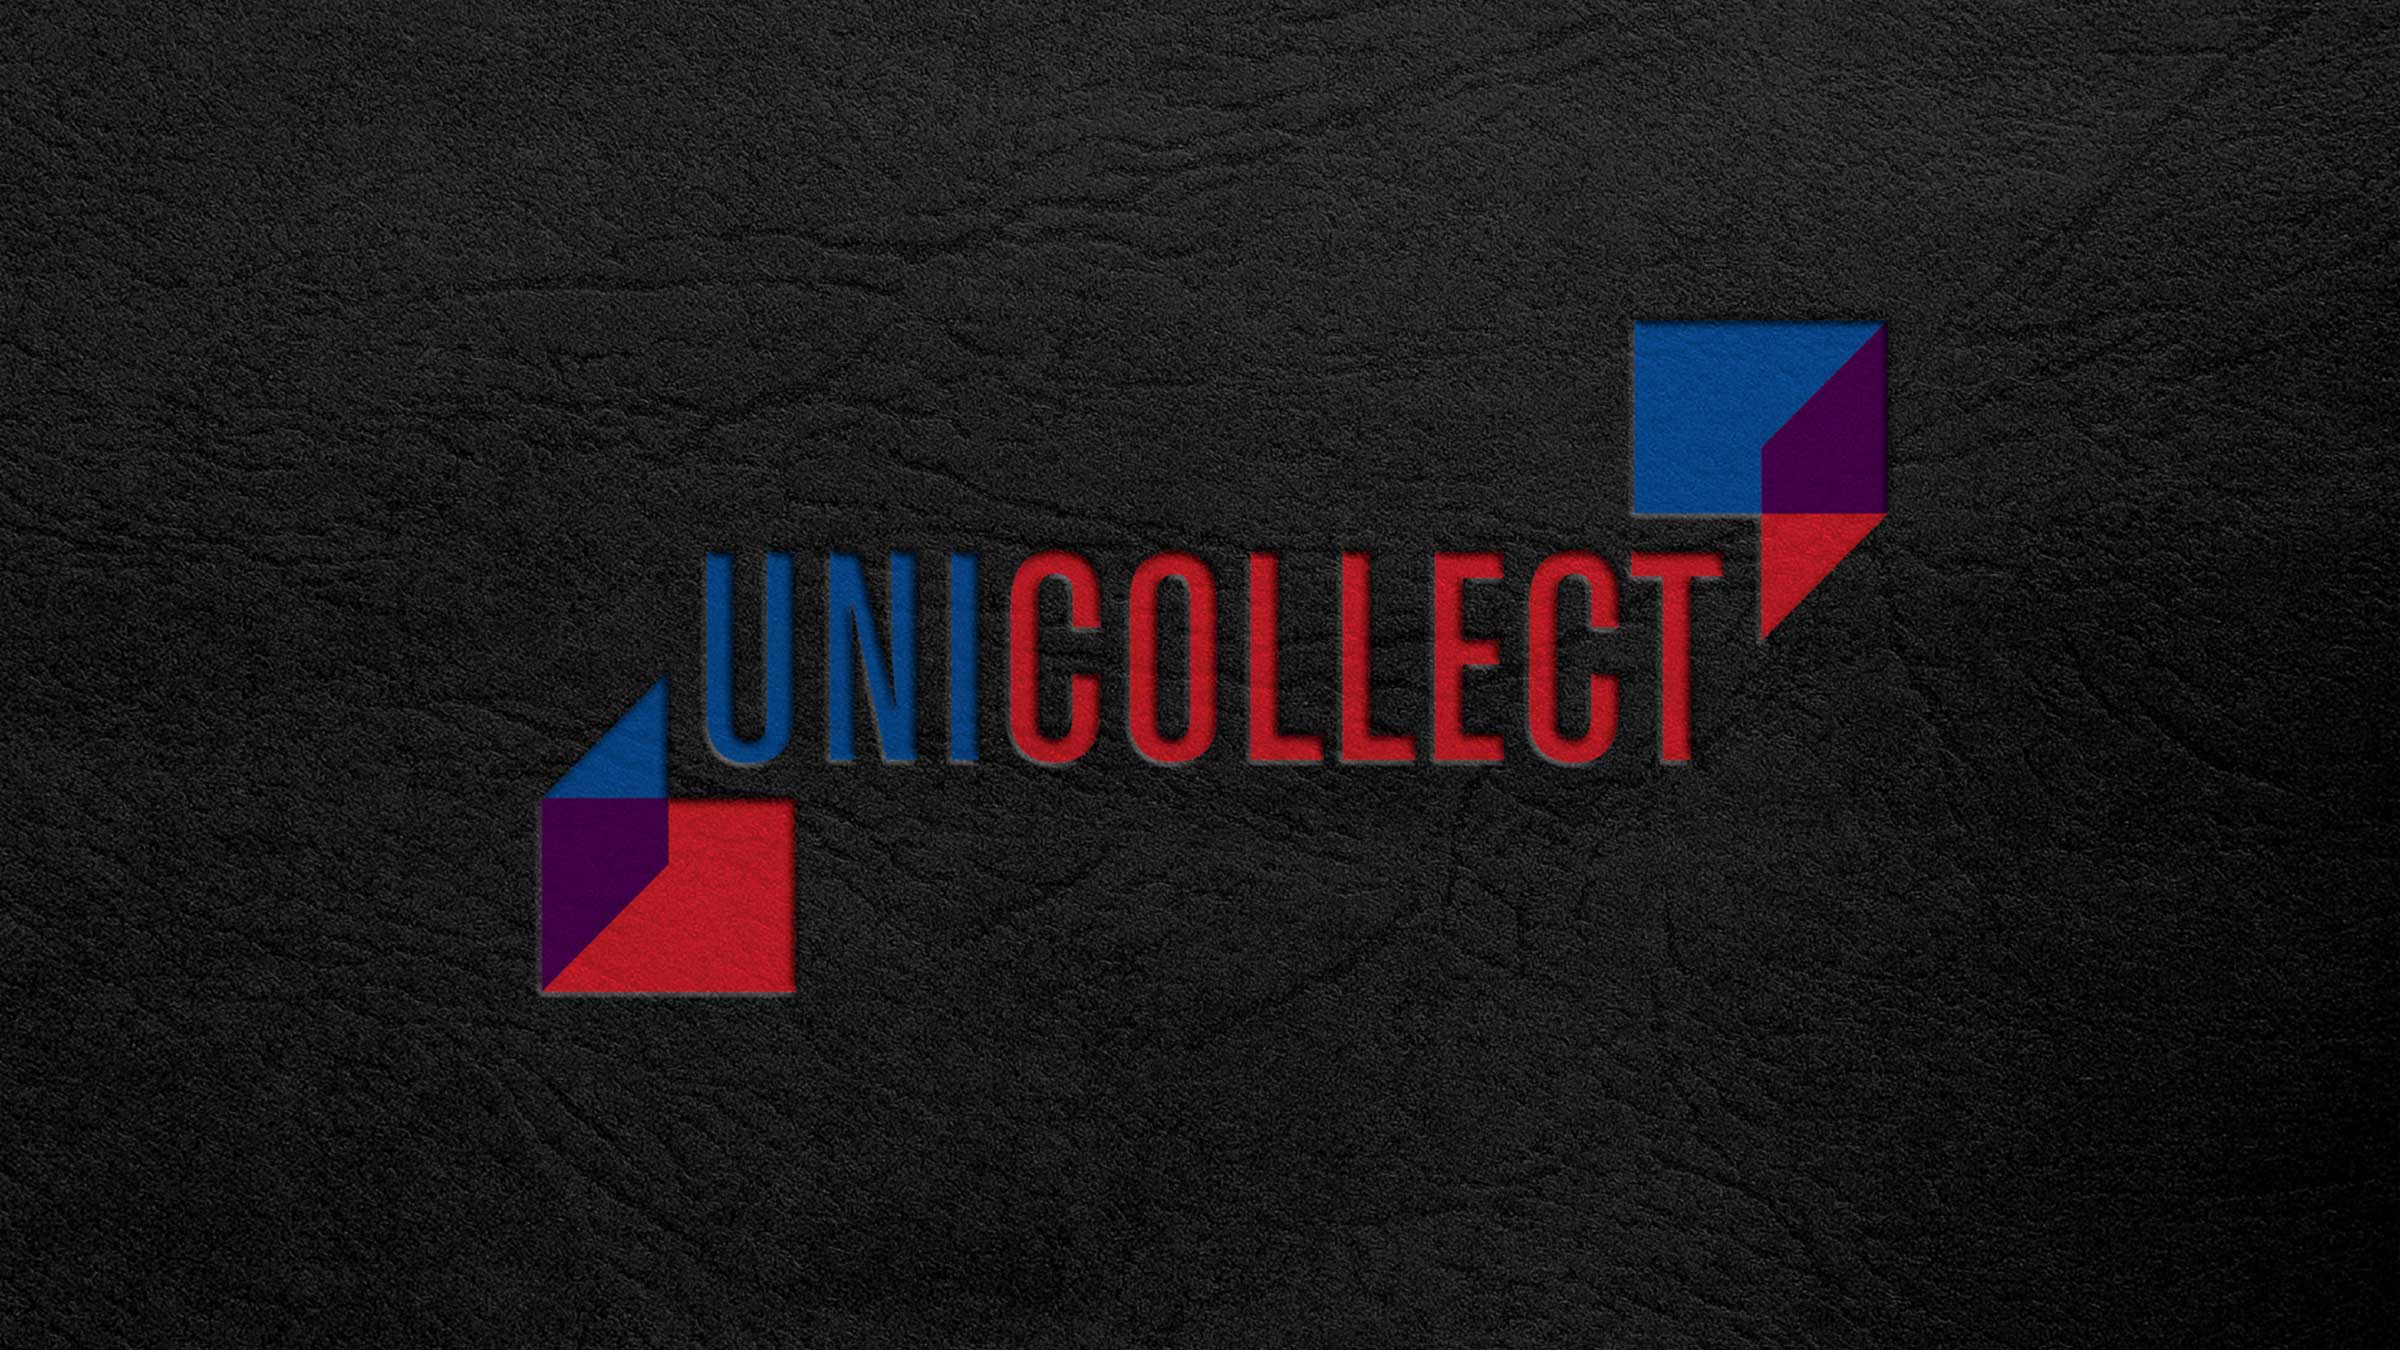 Het logo van UniCollect.